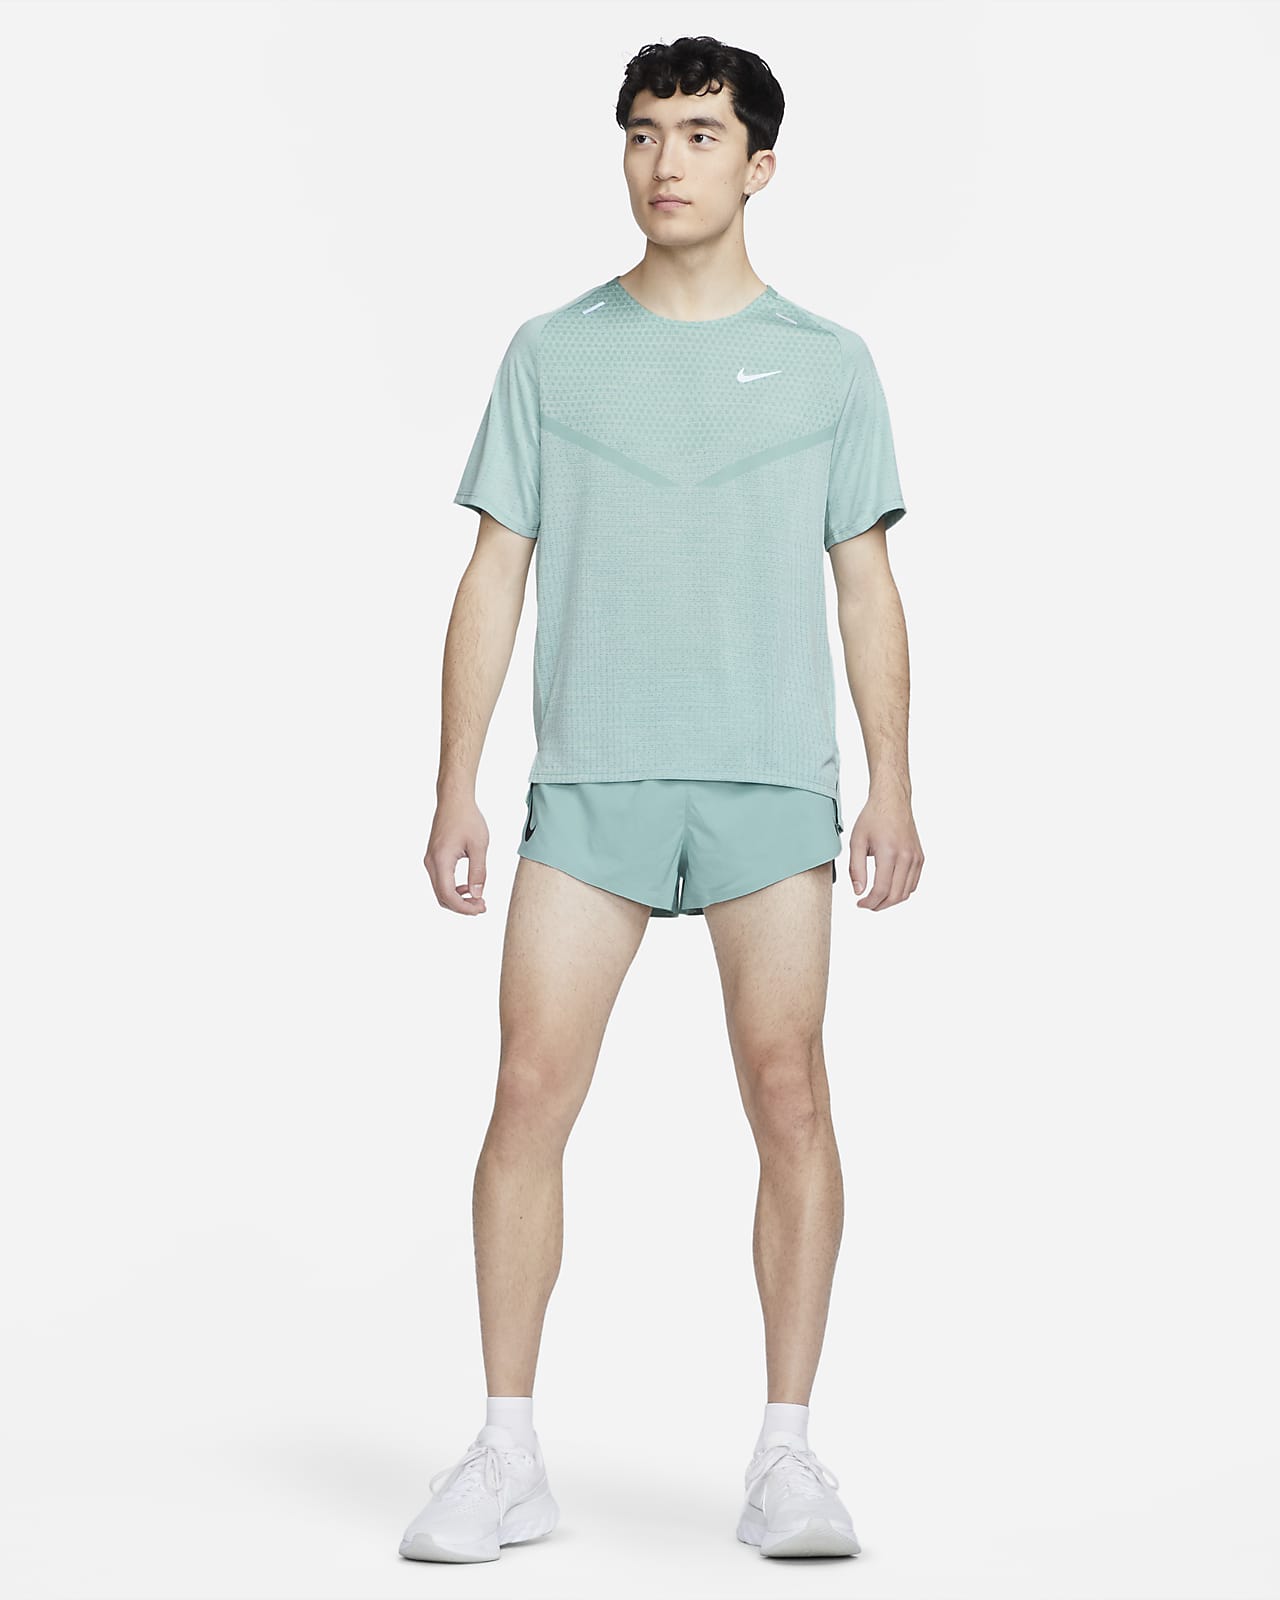 Air Jordan & Nike Size 4 Boys Shirt Shorts U PICK Short Sleeve Sleeveless